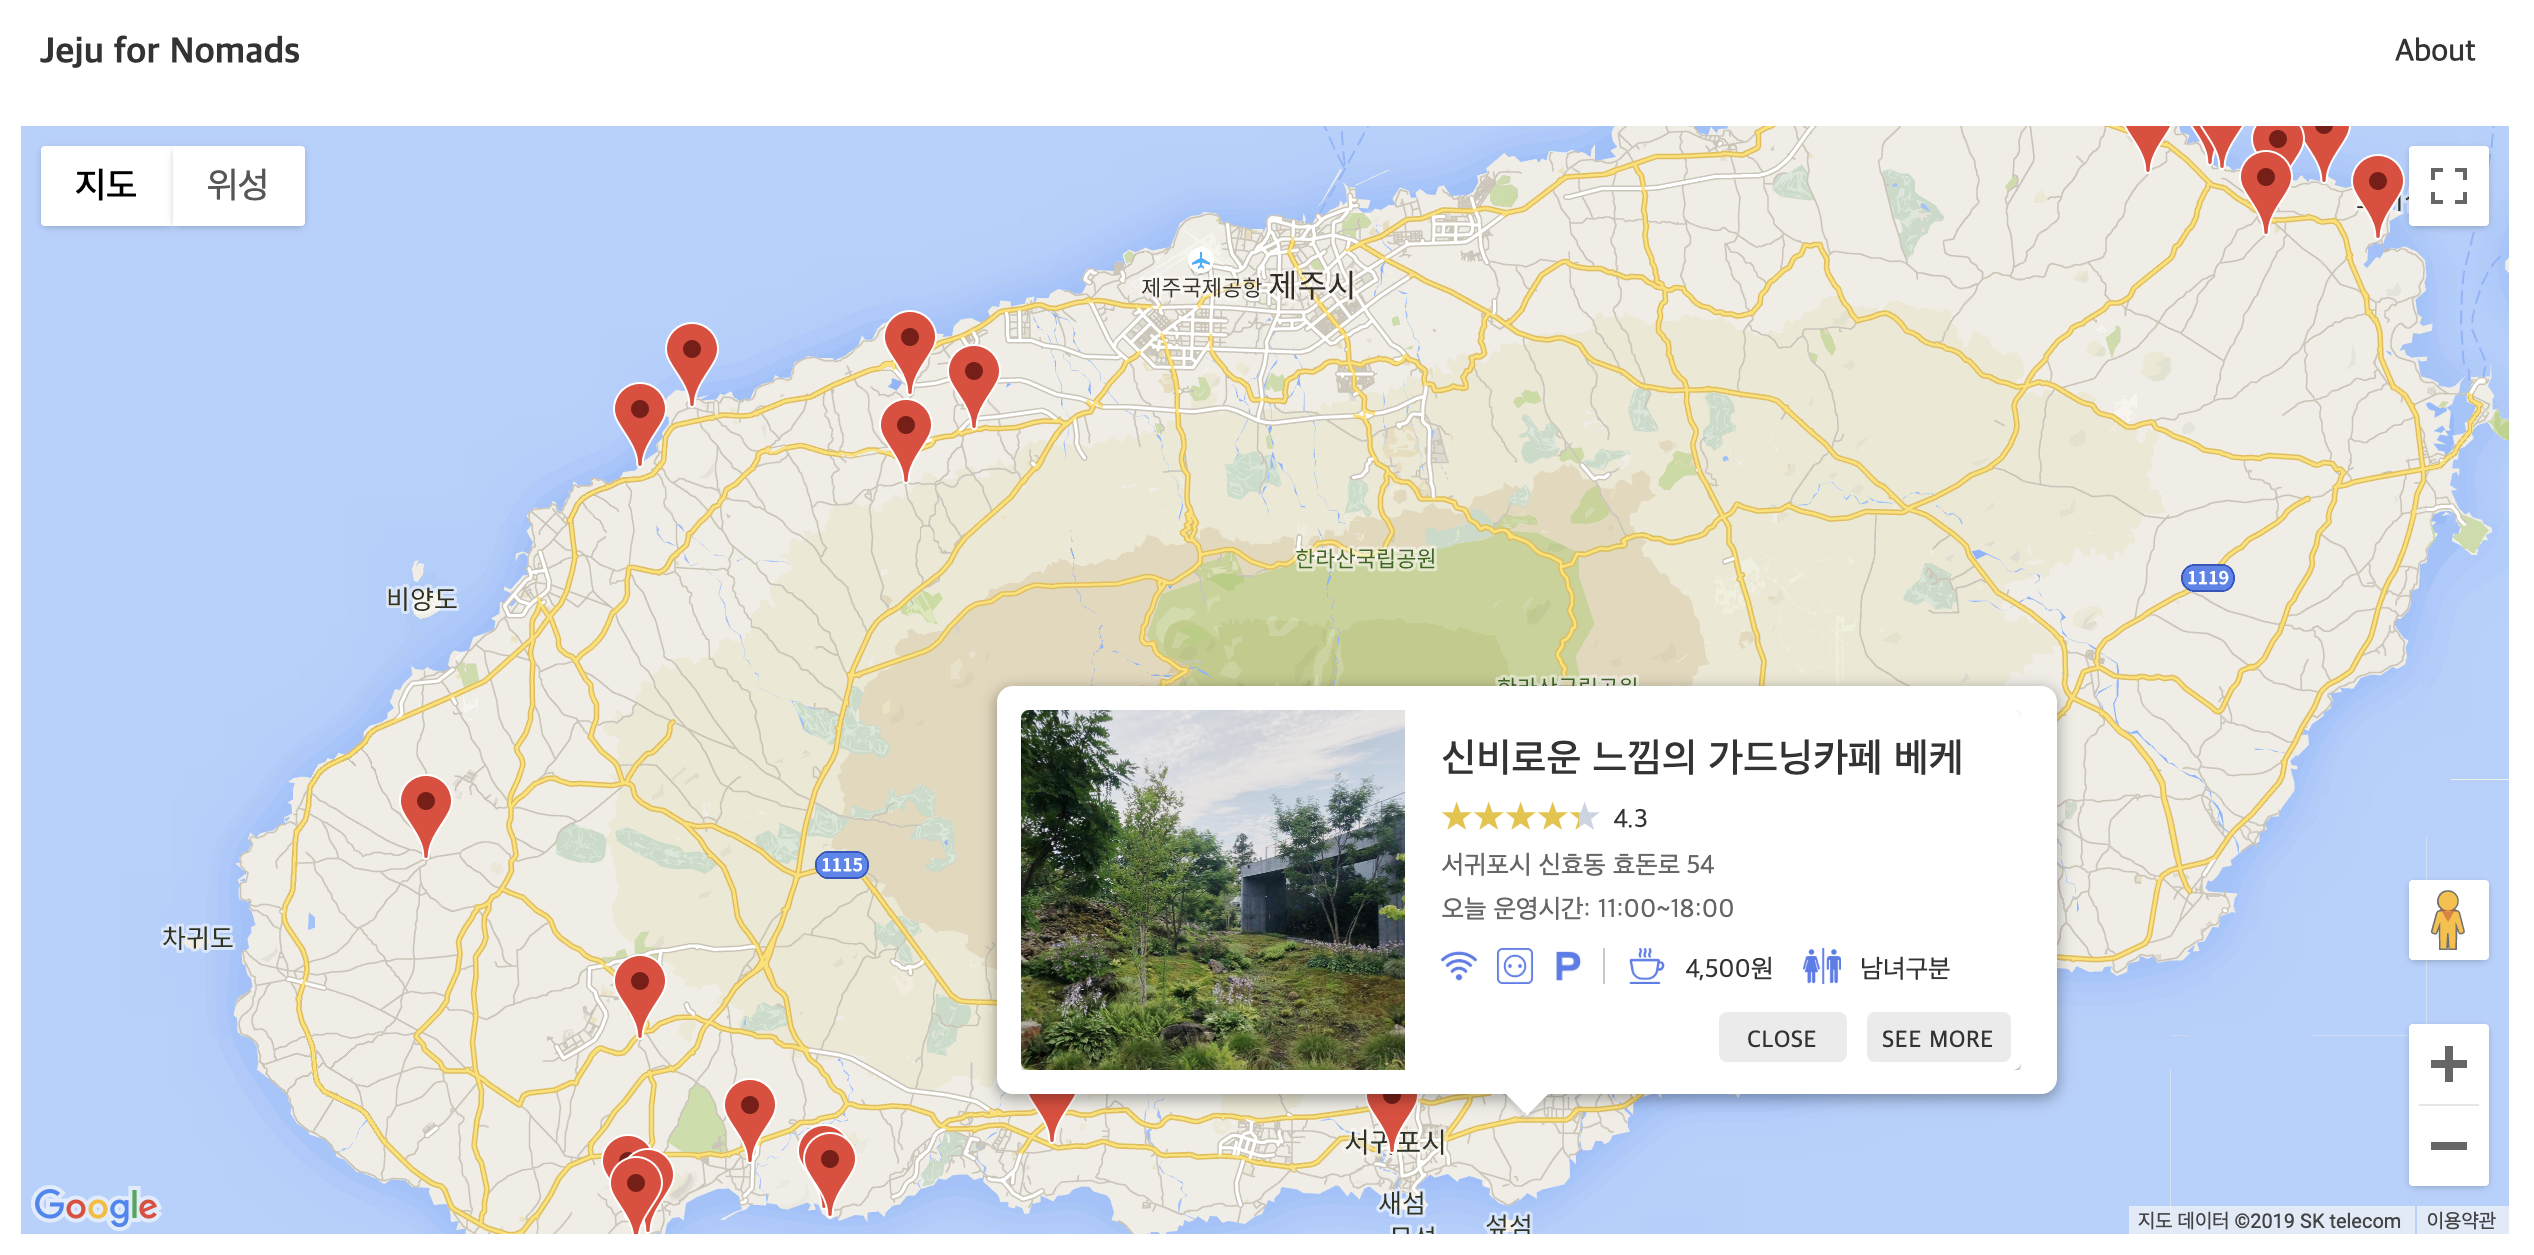 Web_Jeju for Nomads